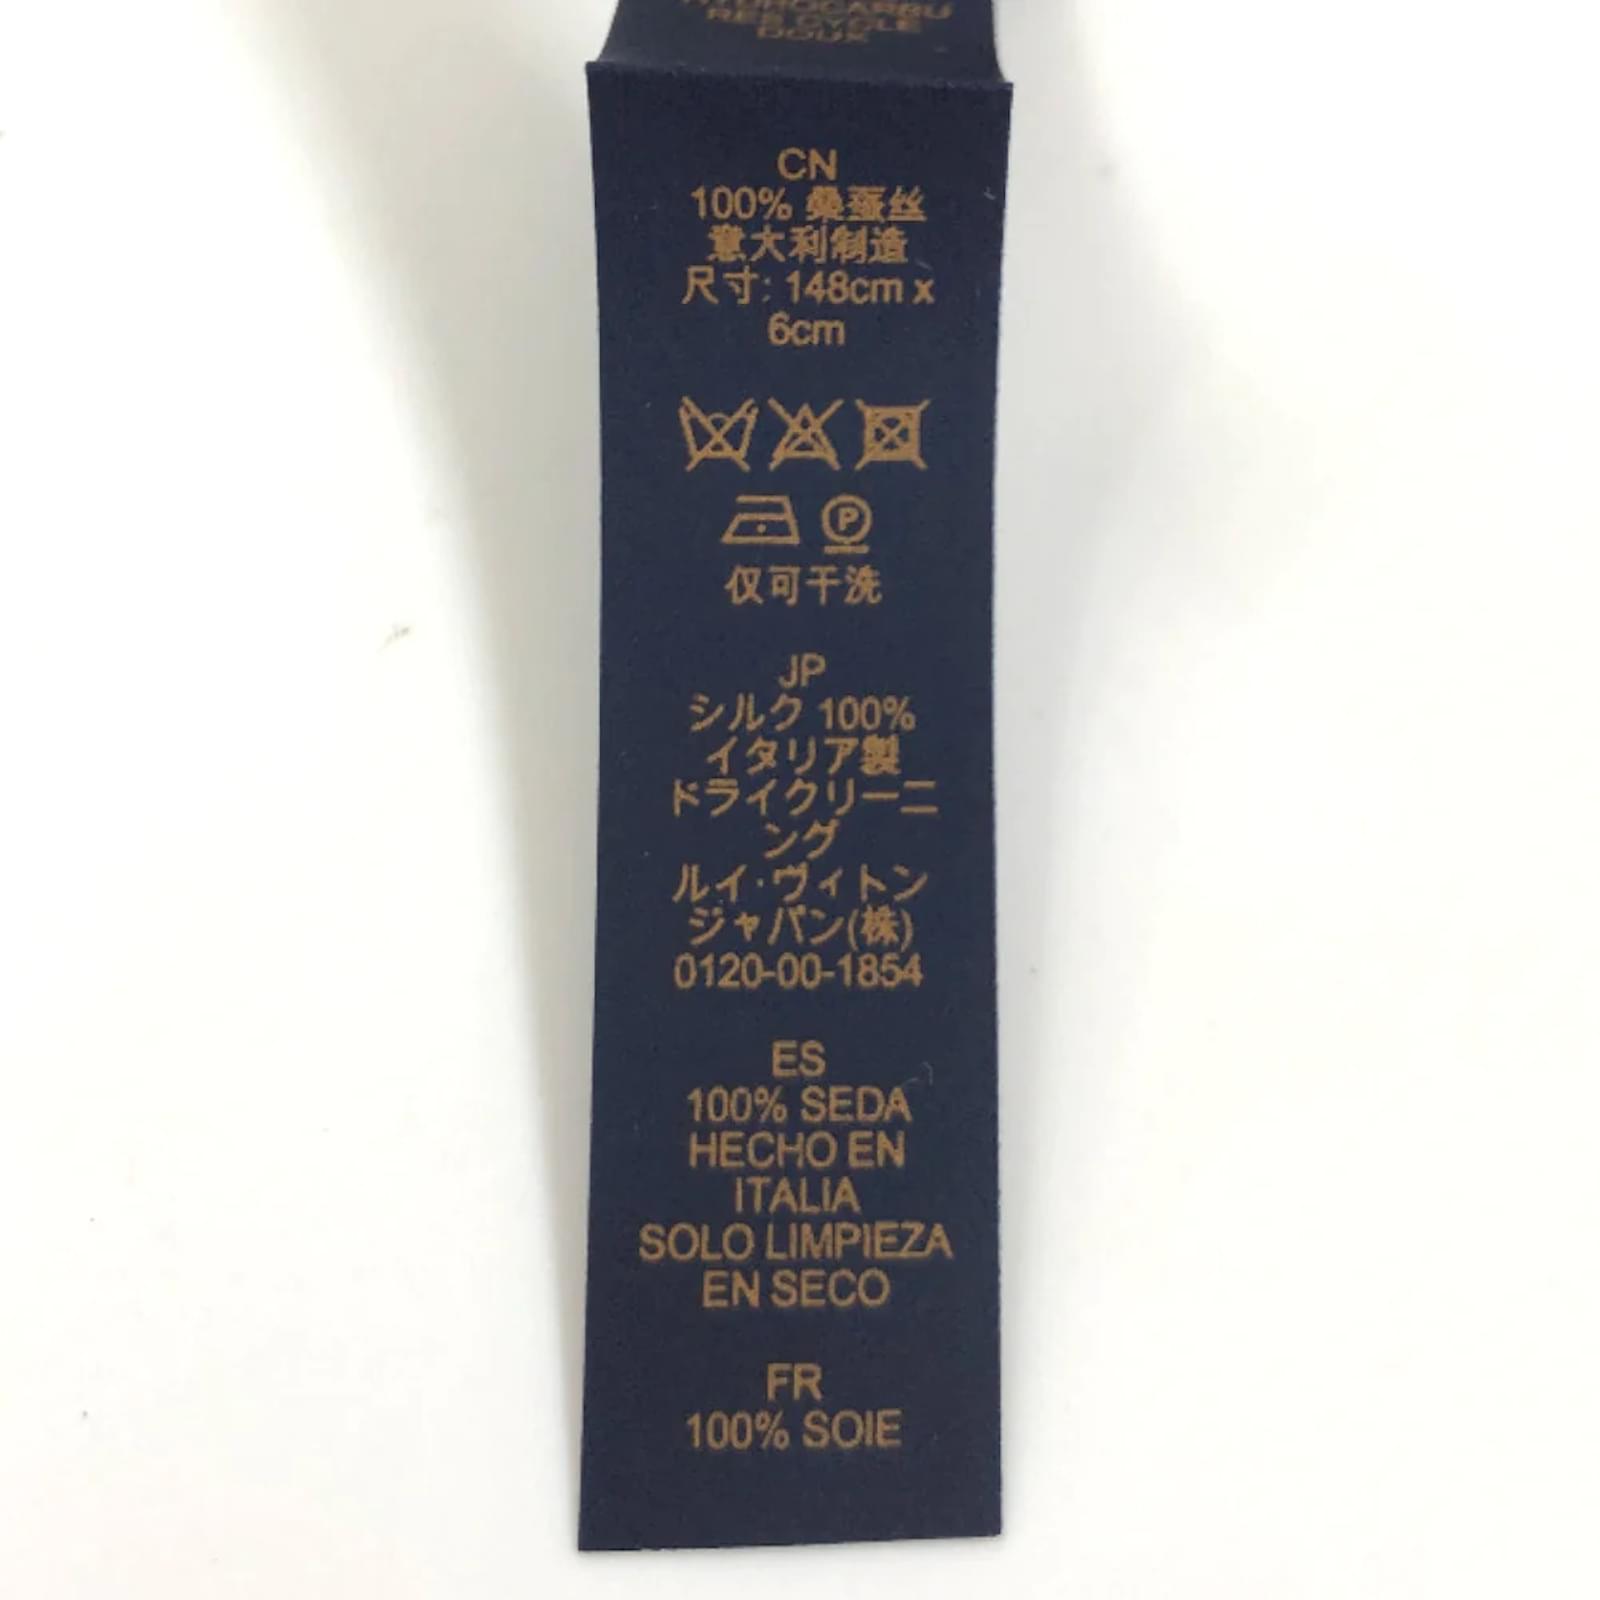 Louis Vuitton Damier Spread Silk Necktie MP3352 Black Cotton ref.947939 -  Joli Closet